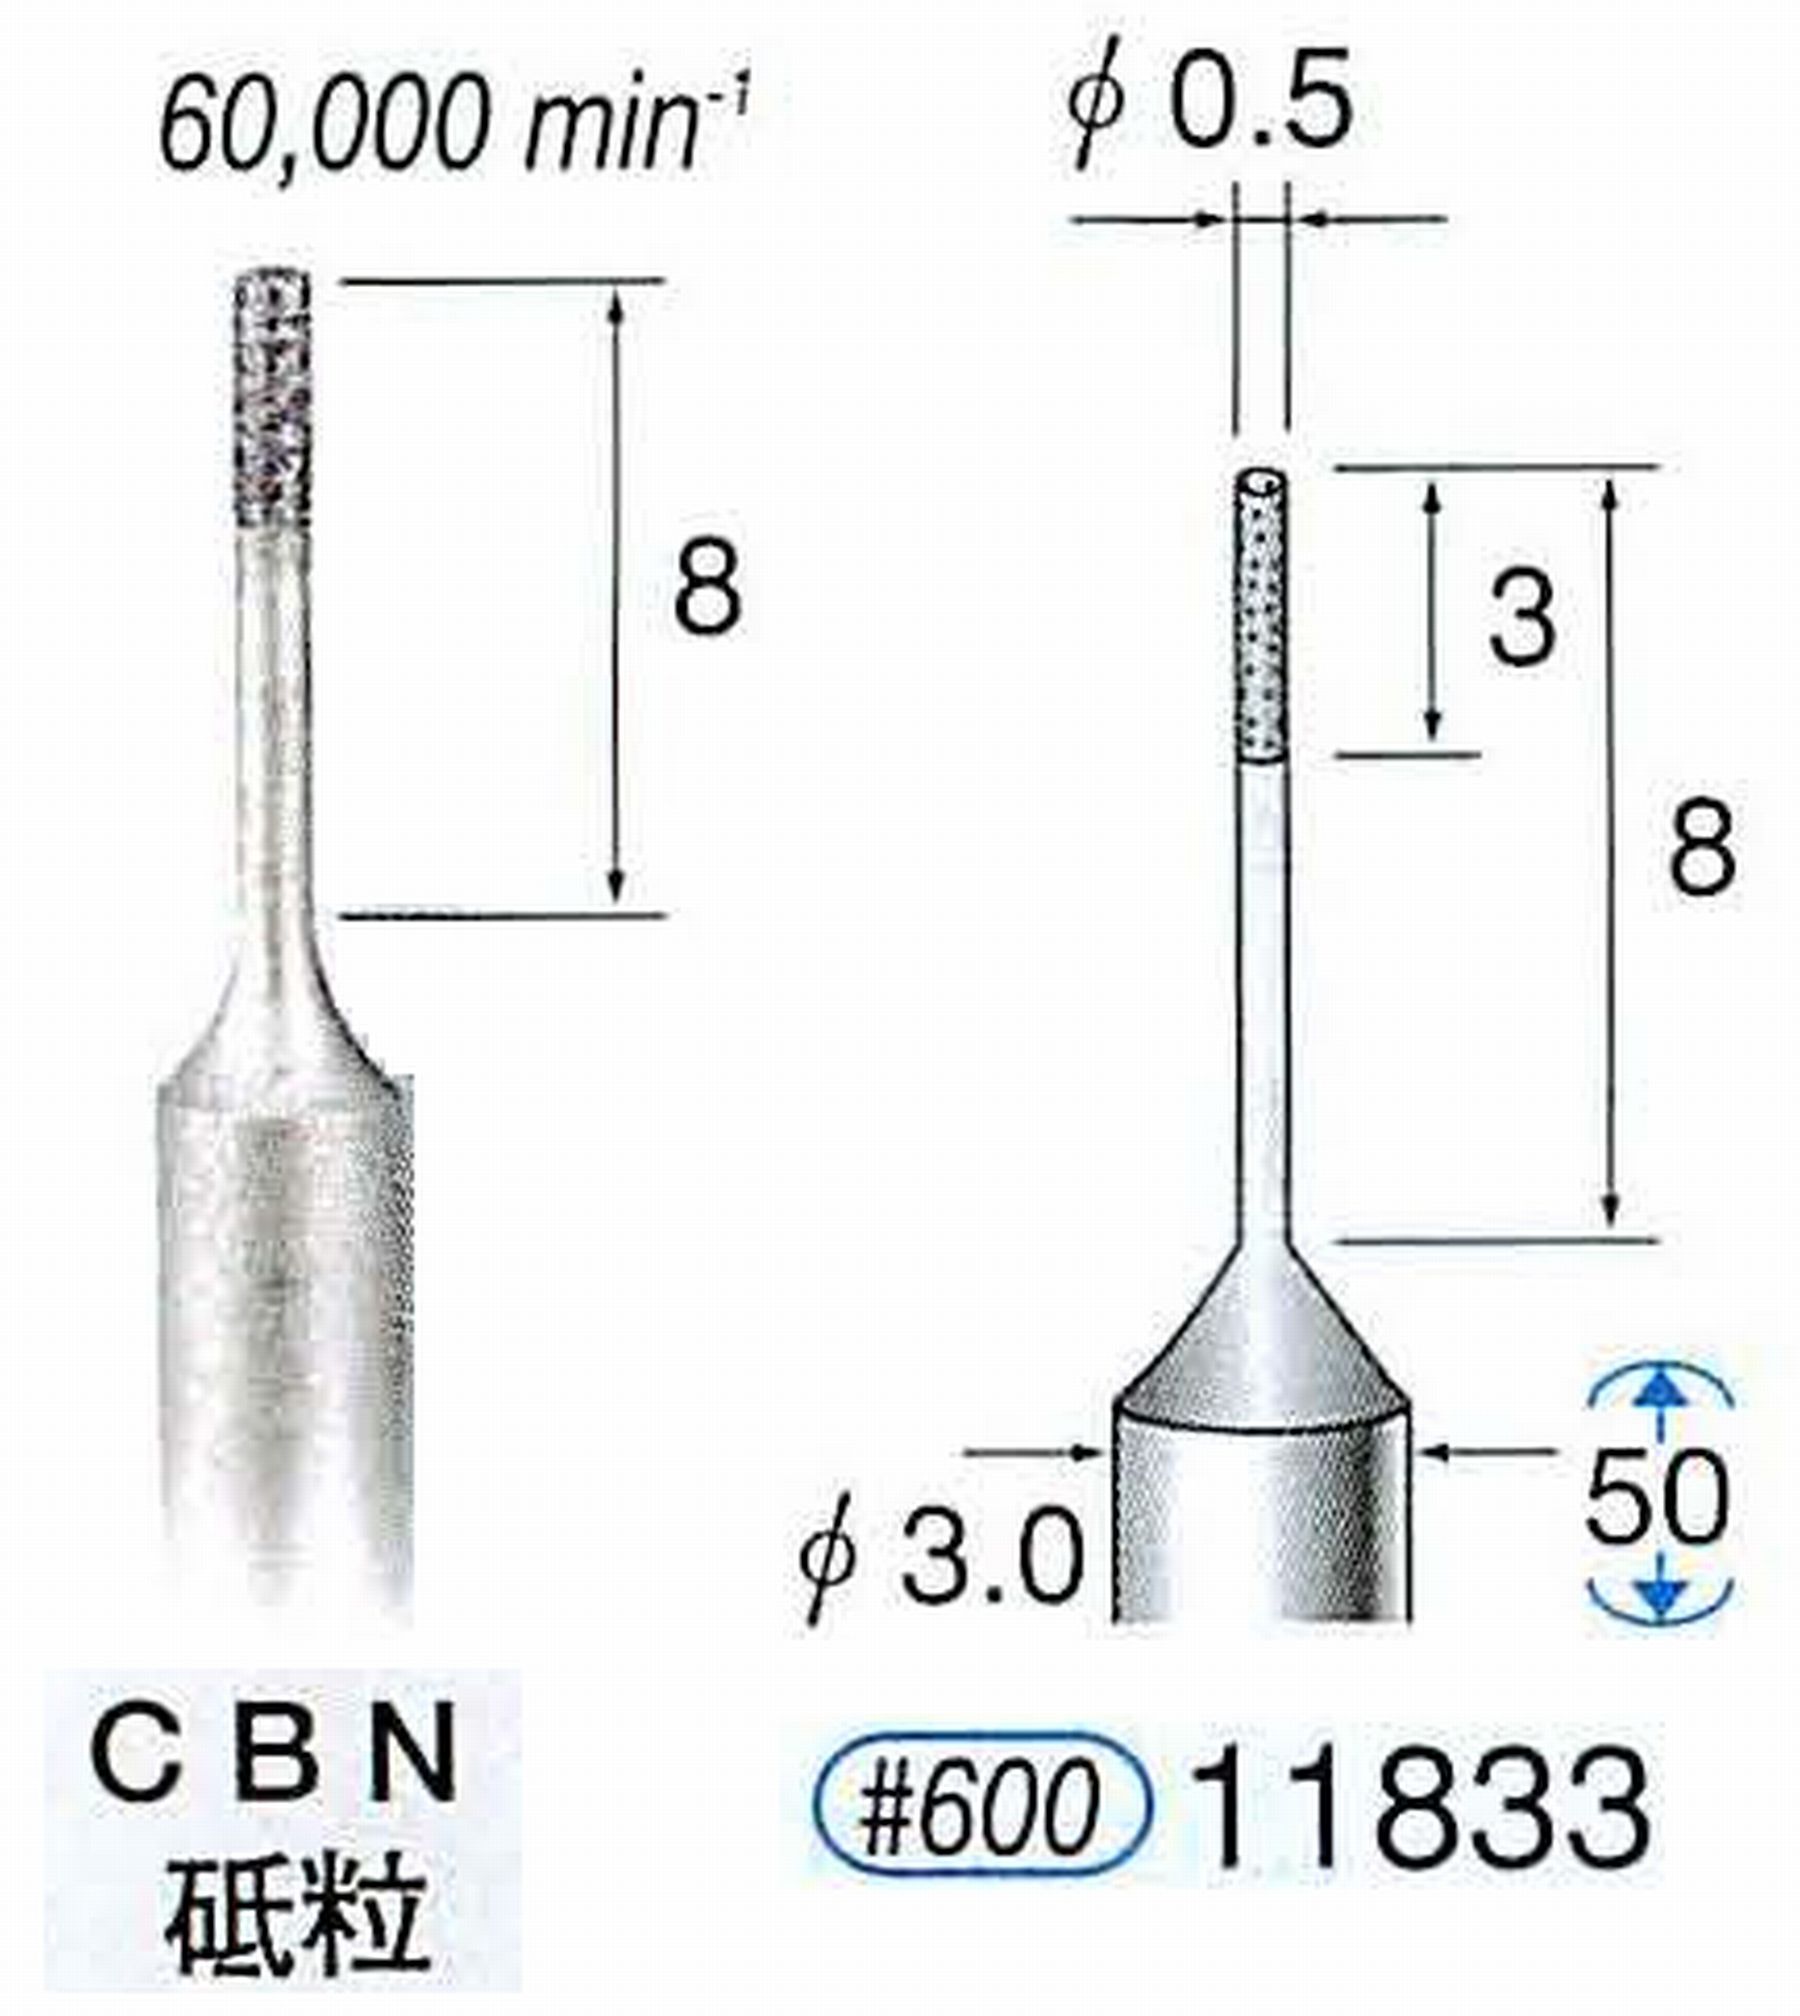 ナカニシ/NAKANISHI SP電着CBNバー CBN砥粒 軸径(シャンク)φ3.0mm 11833